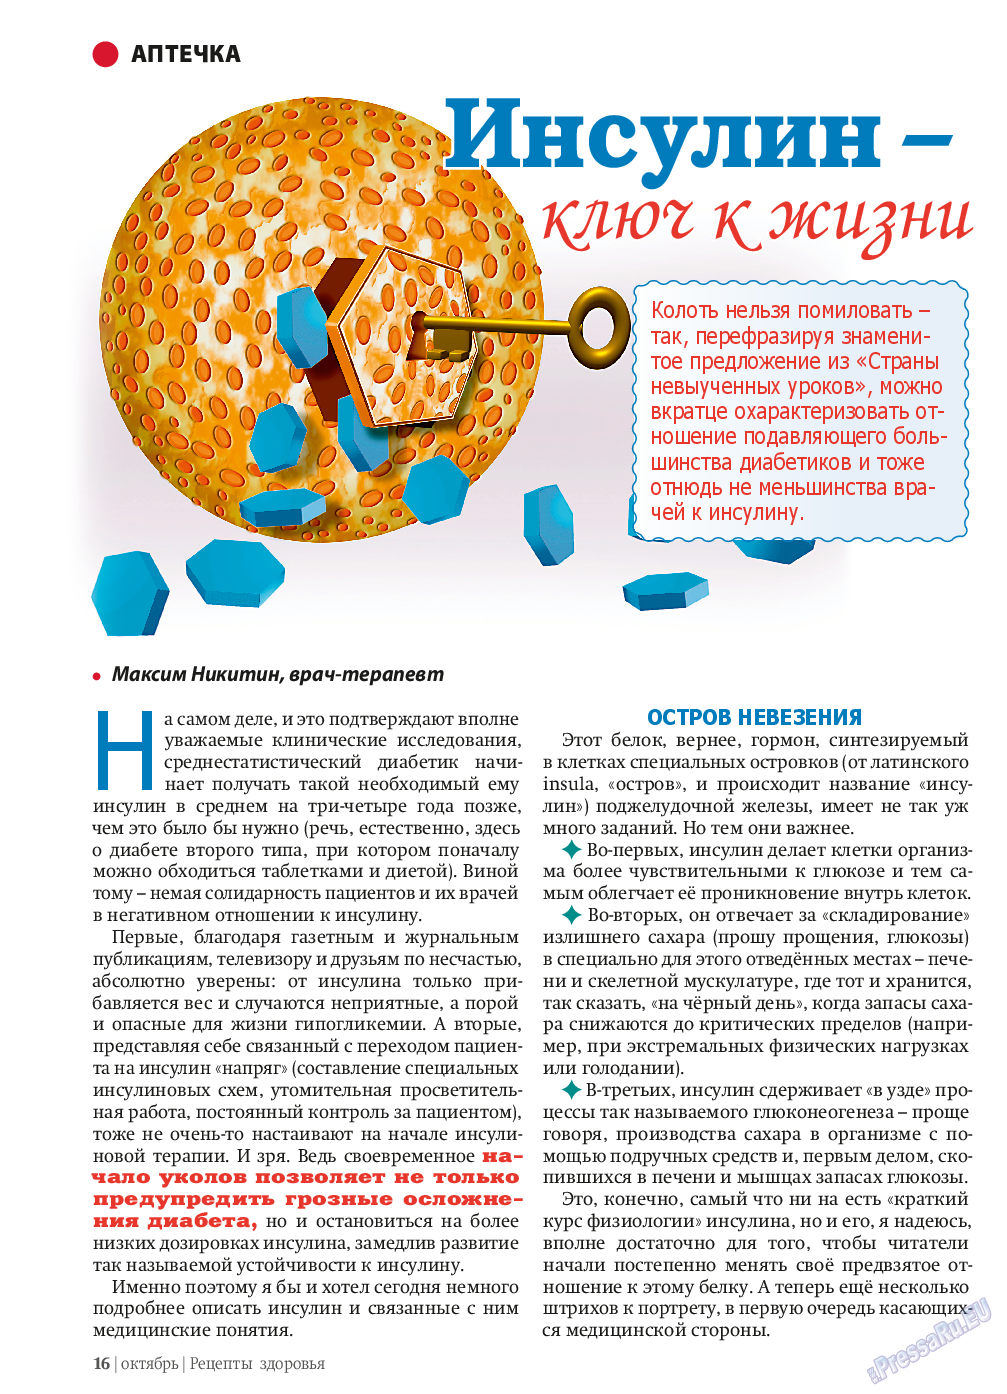 Рецепты здоровья (журнал). 2013 год, номер 10, стр. 16